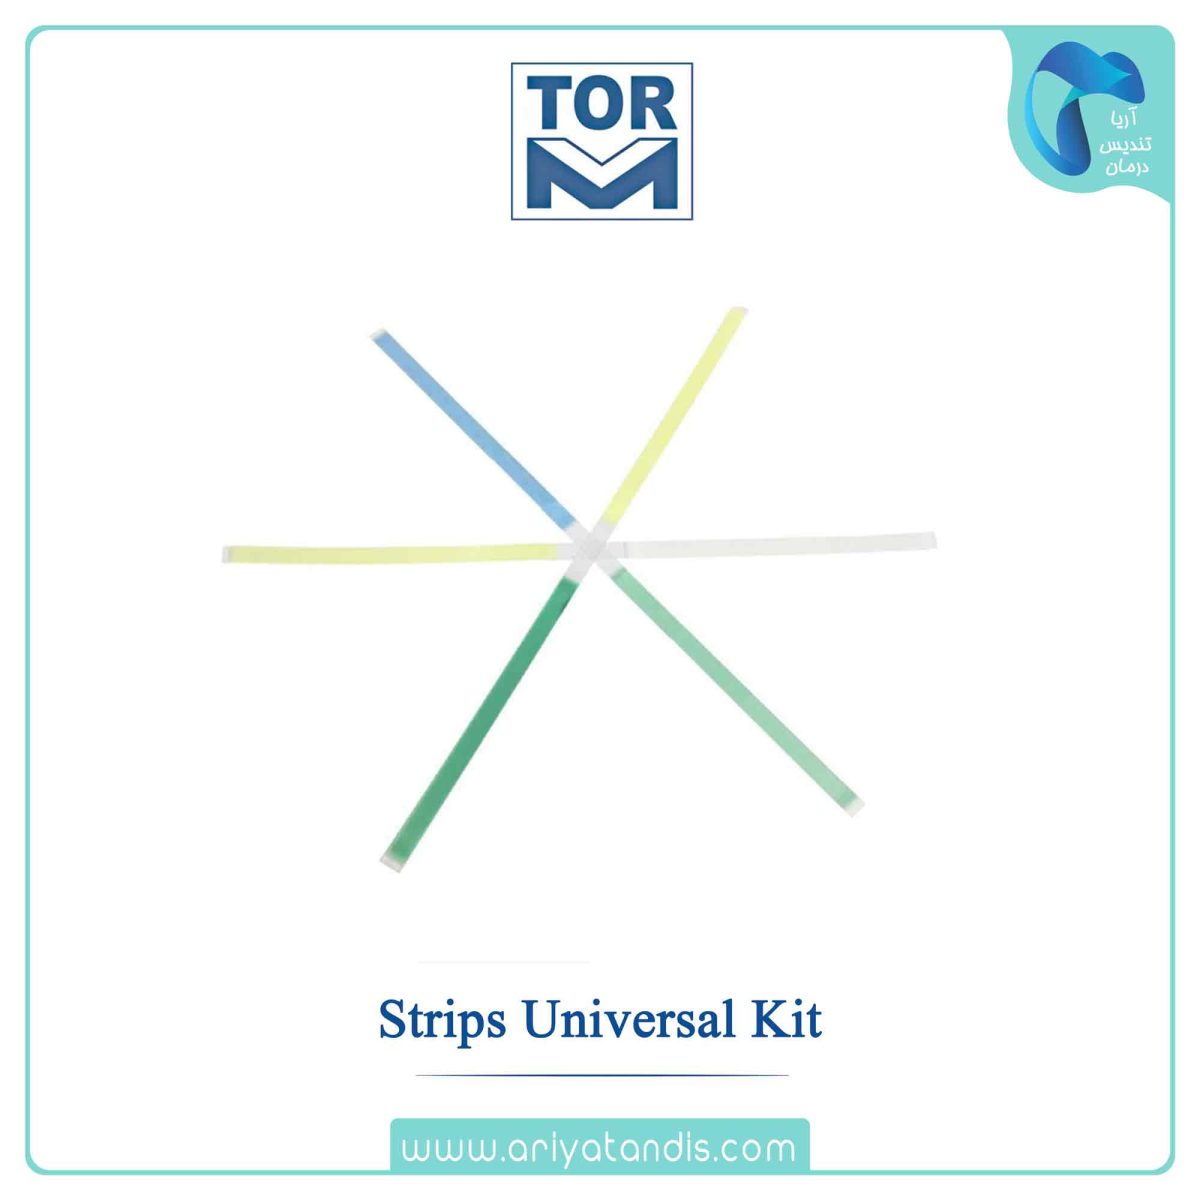 قیمت کیت استریپ و نوار پرداخت کامپوزیت تور وی ام 4 رنگ ،TOR VM Strips Universal Kit